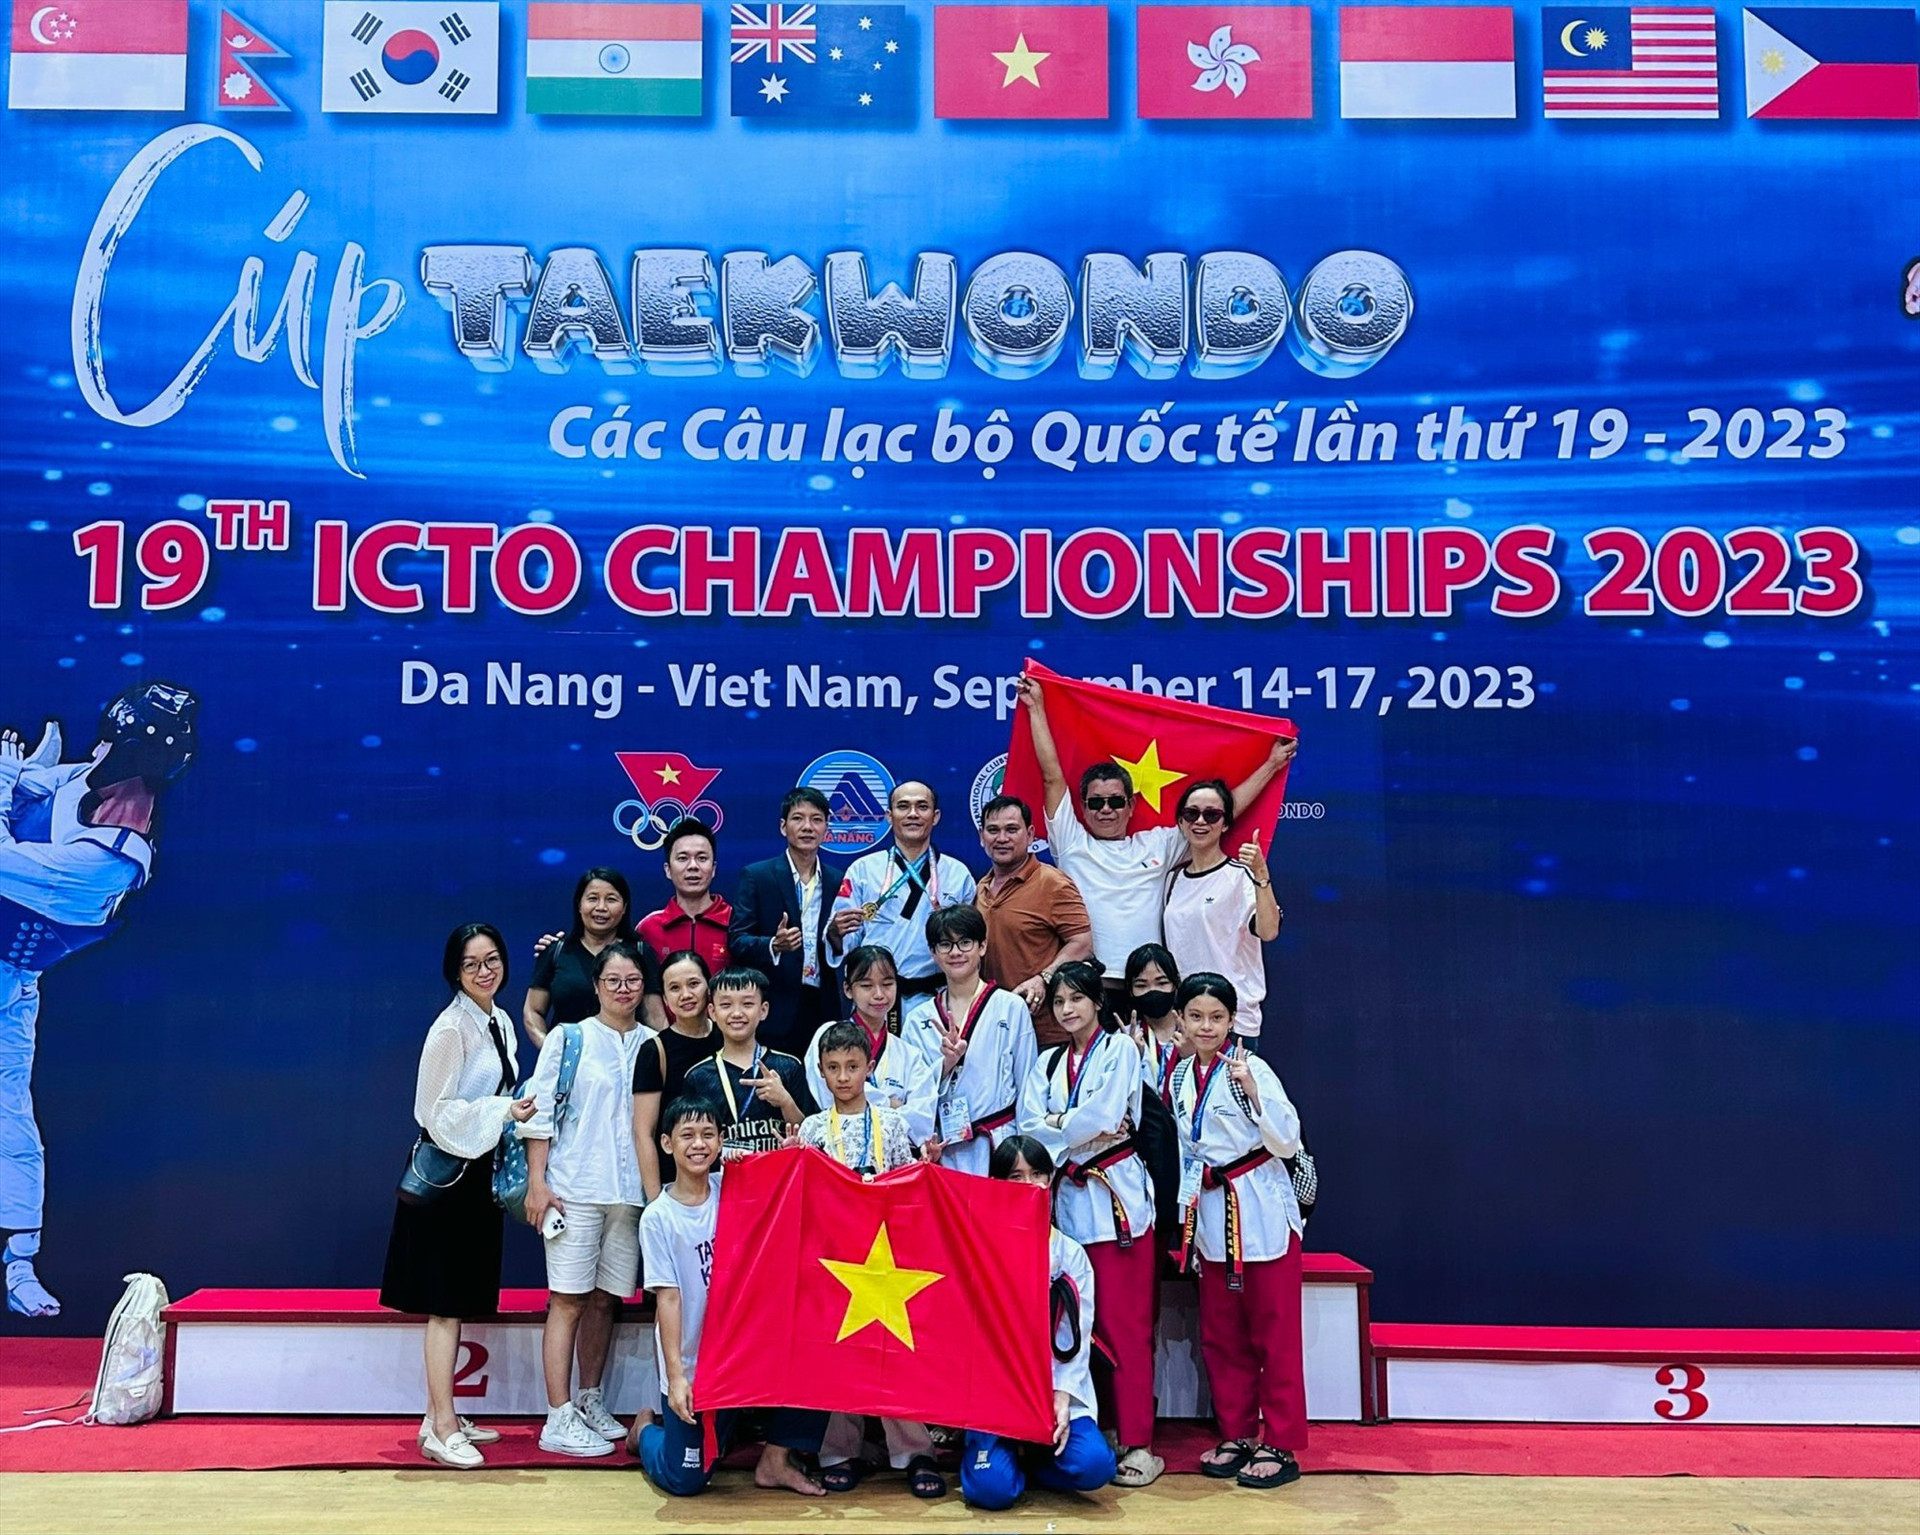 Đoàn vận động viên, huấn luyện viên CLB Hoàng Dũng tại giải cúp Taekwondo các CLB quốc tế lần thứ 19. Ảnh: T.Dũng